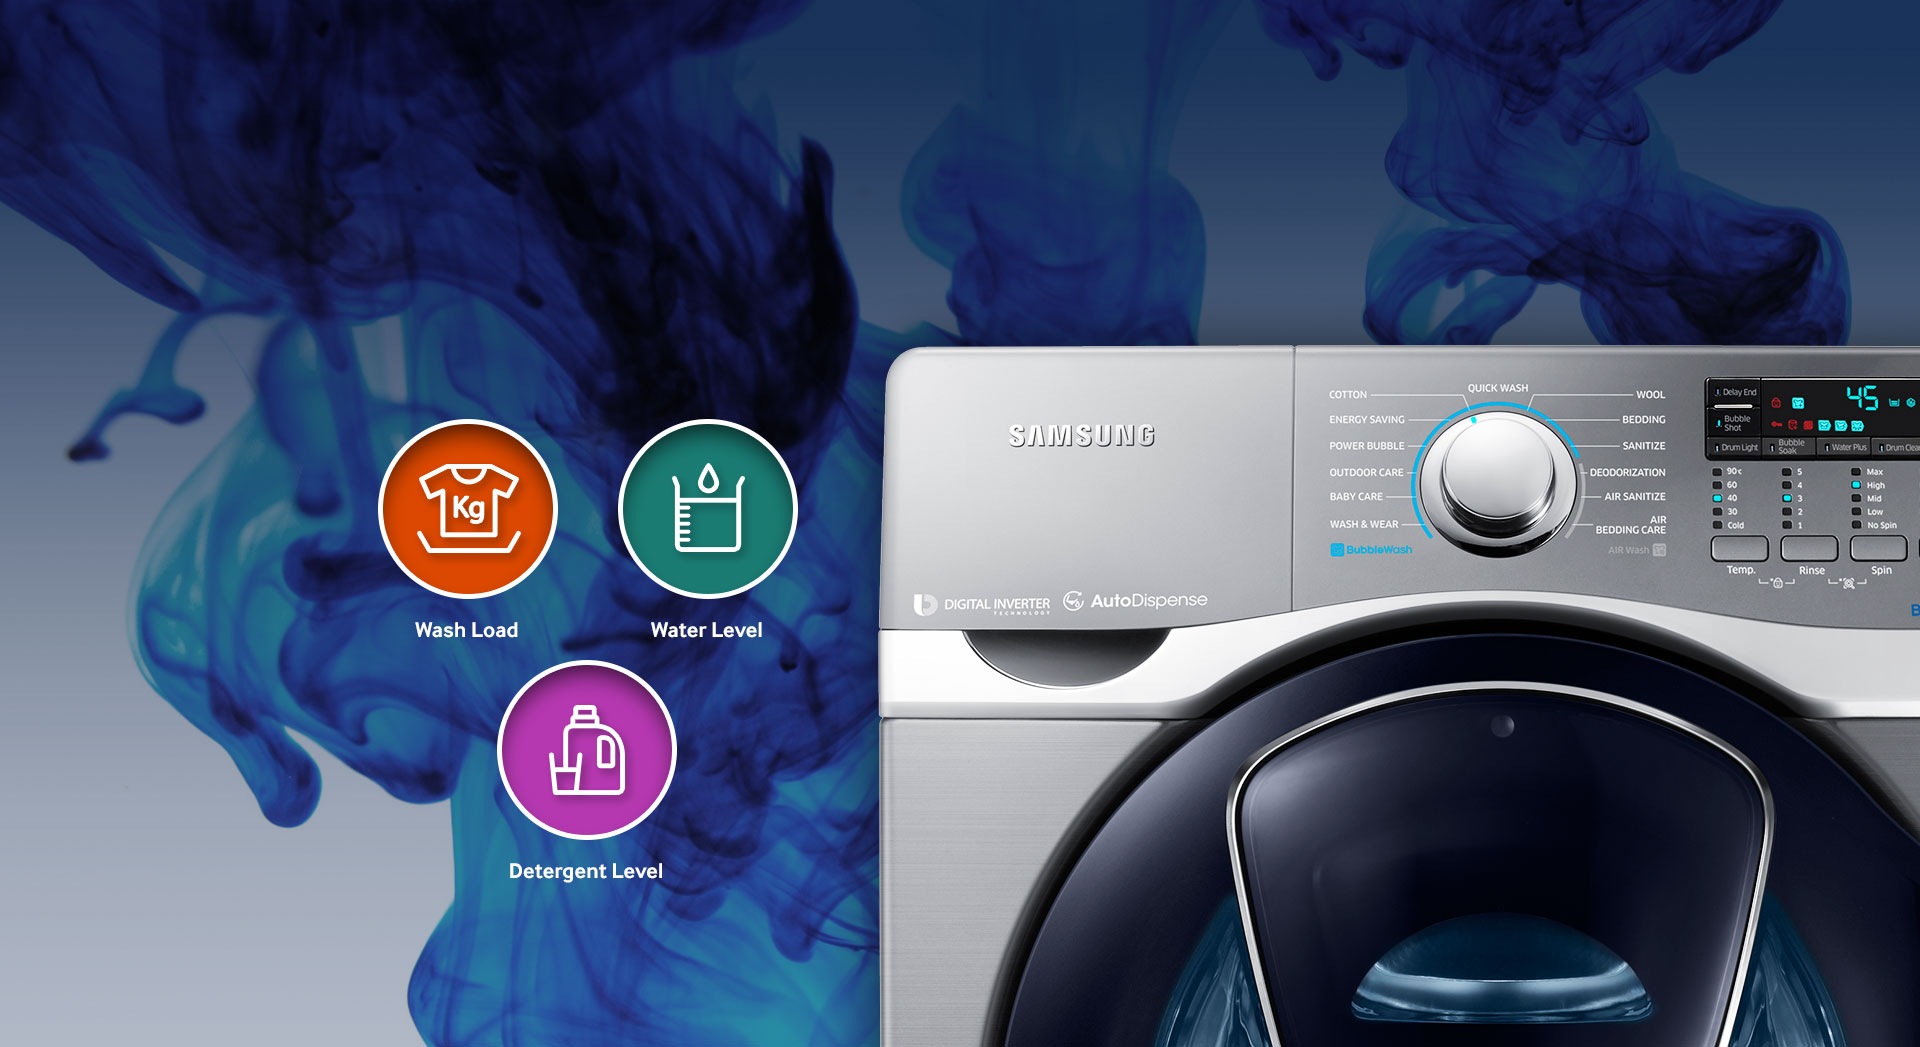 Machine à laver séchante Samsung WD18J7825KP au Maroc 